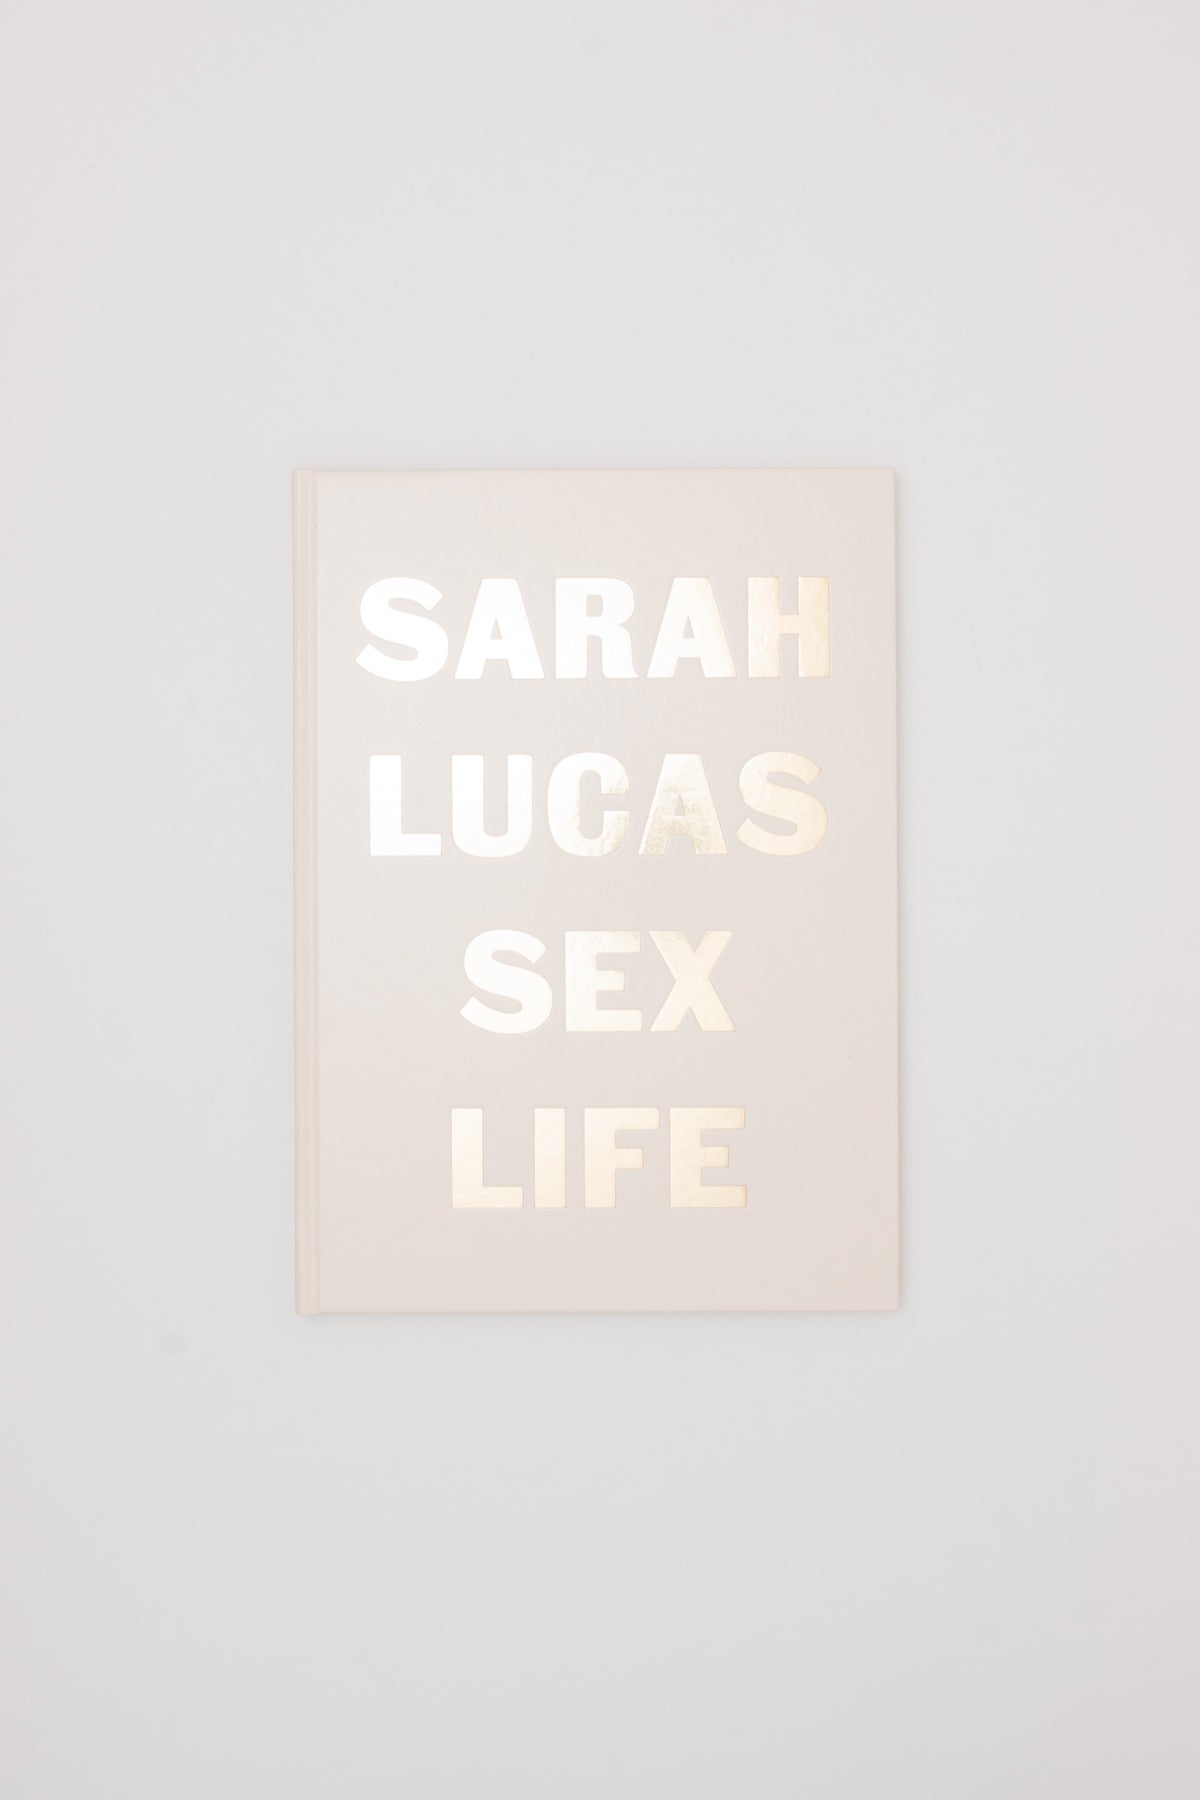 SEX LIFE - Sarah Lucas